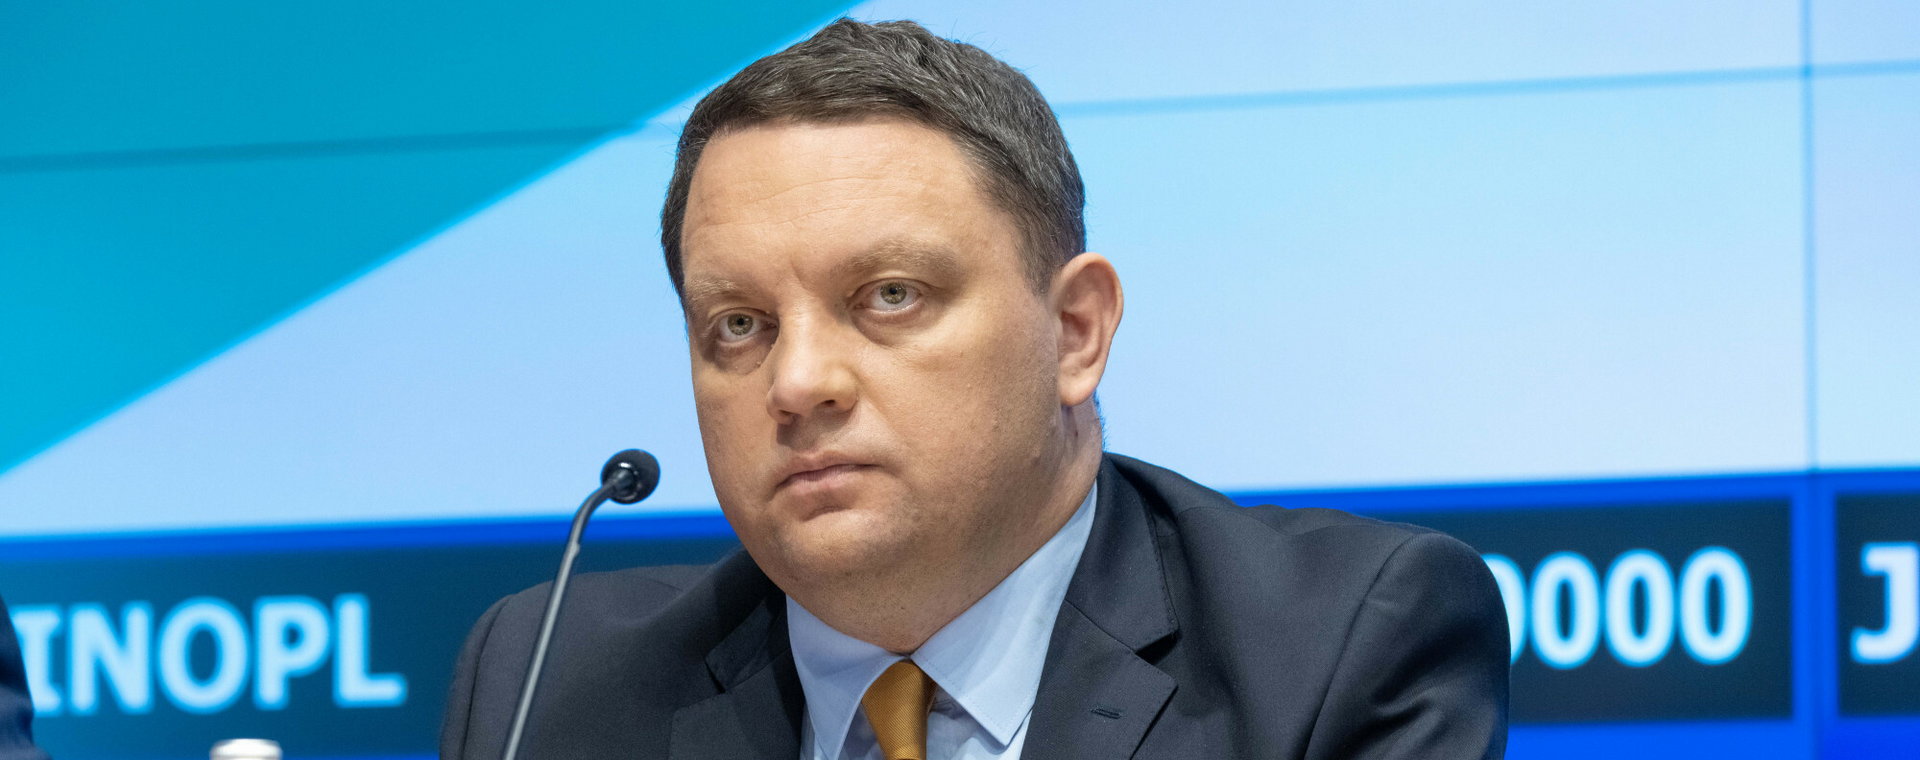 Prezes KGHM Marcin Chludziński.